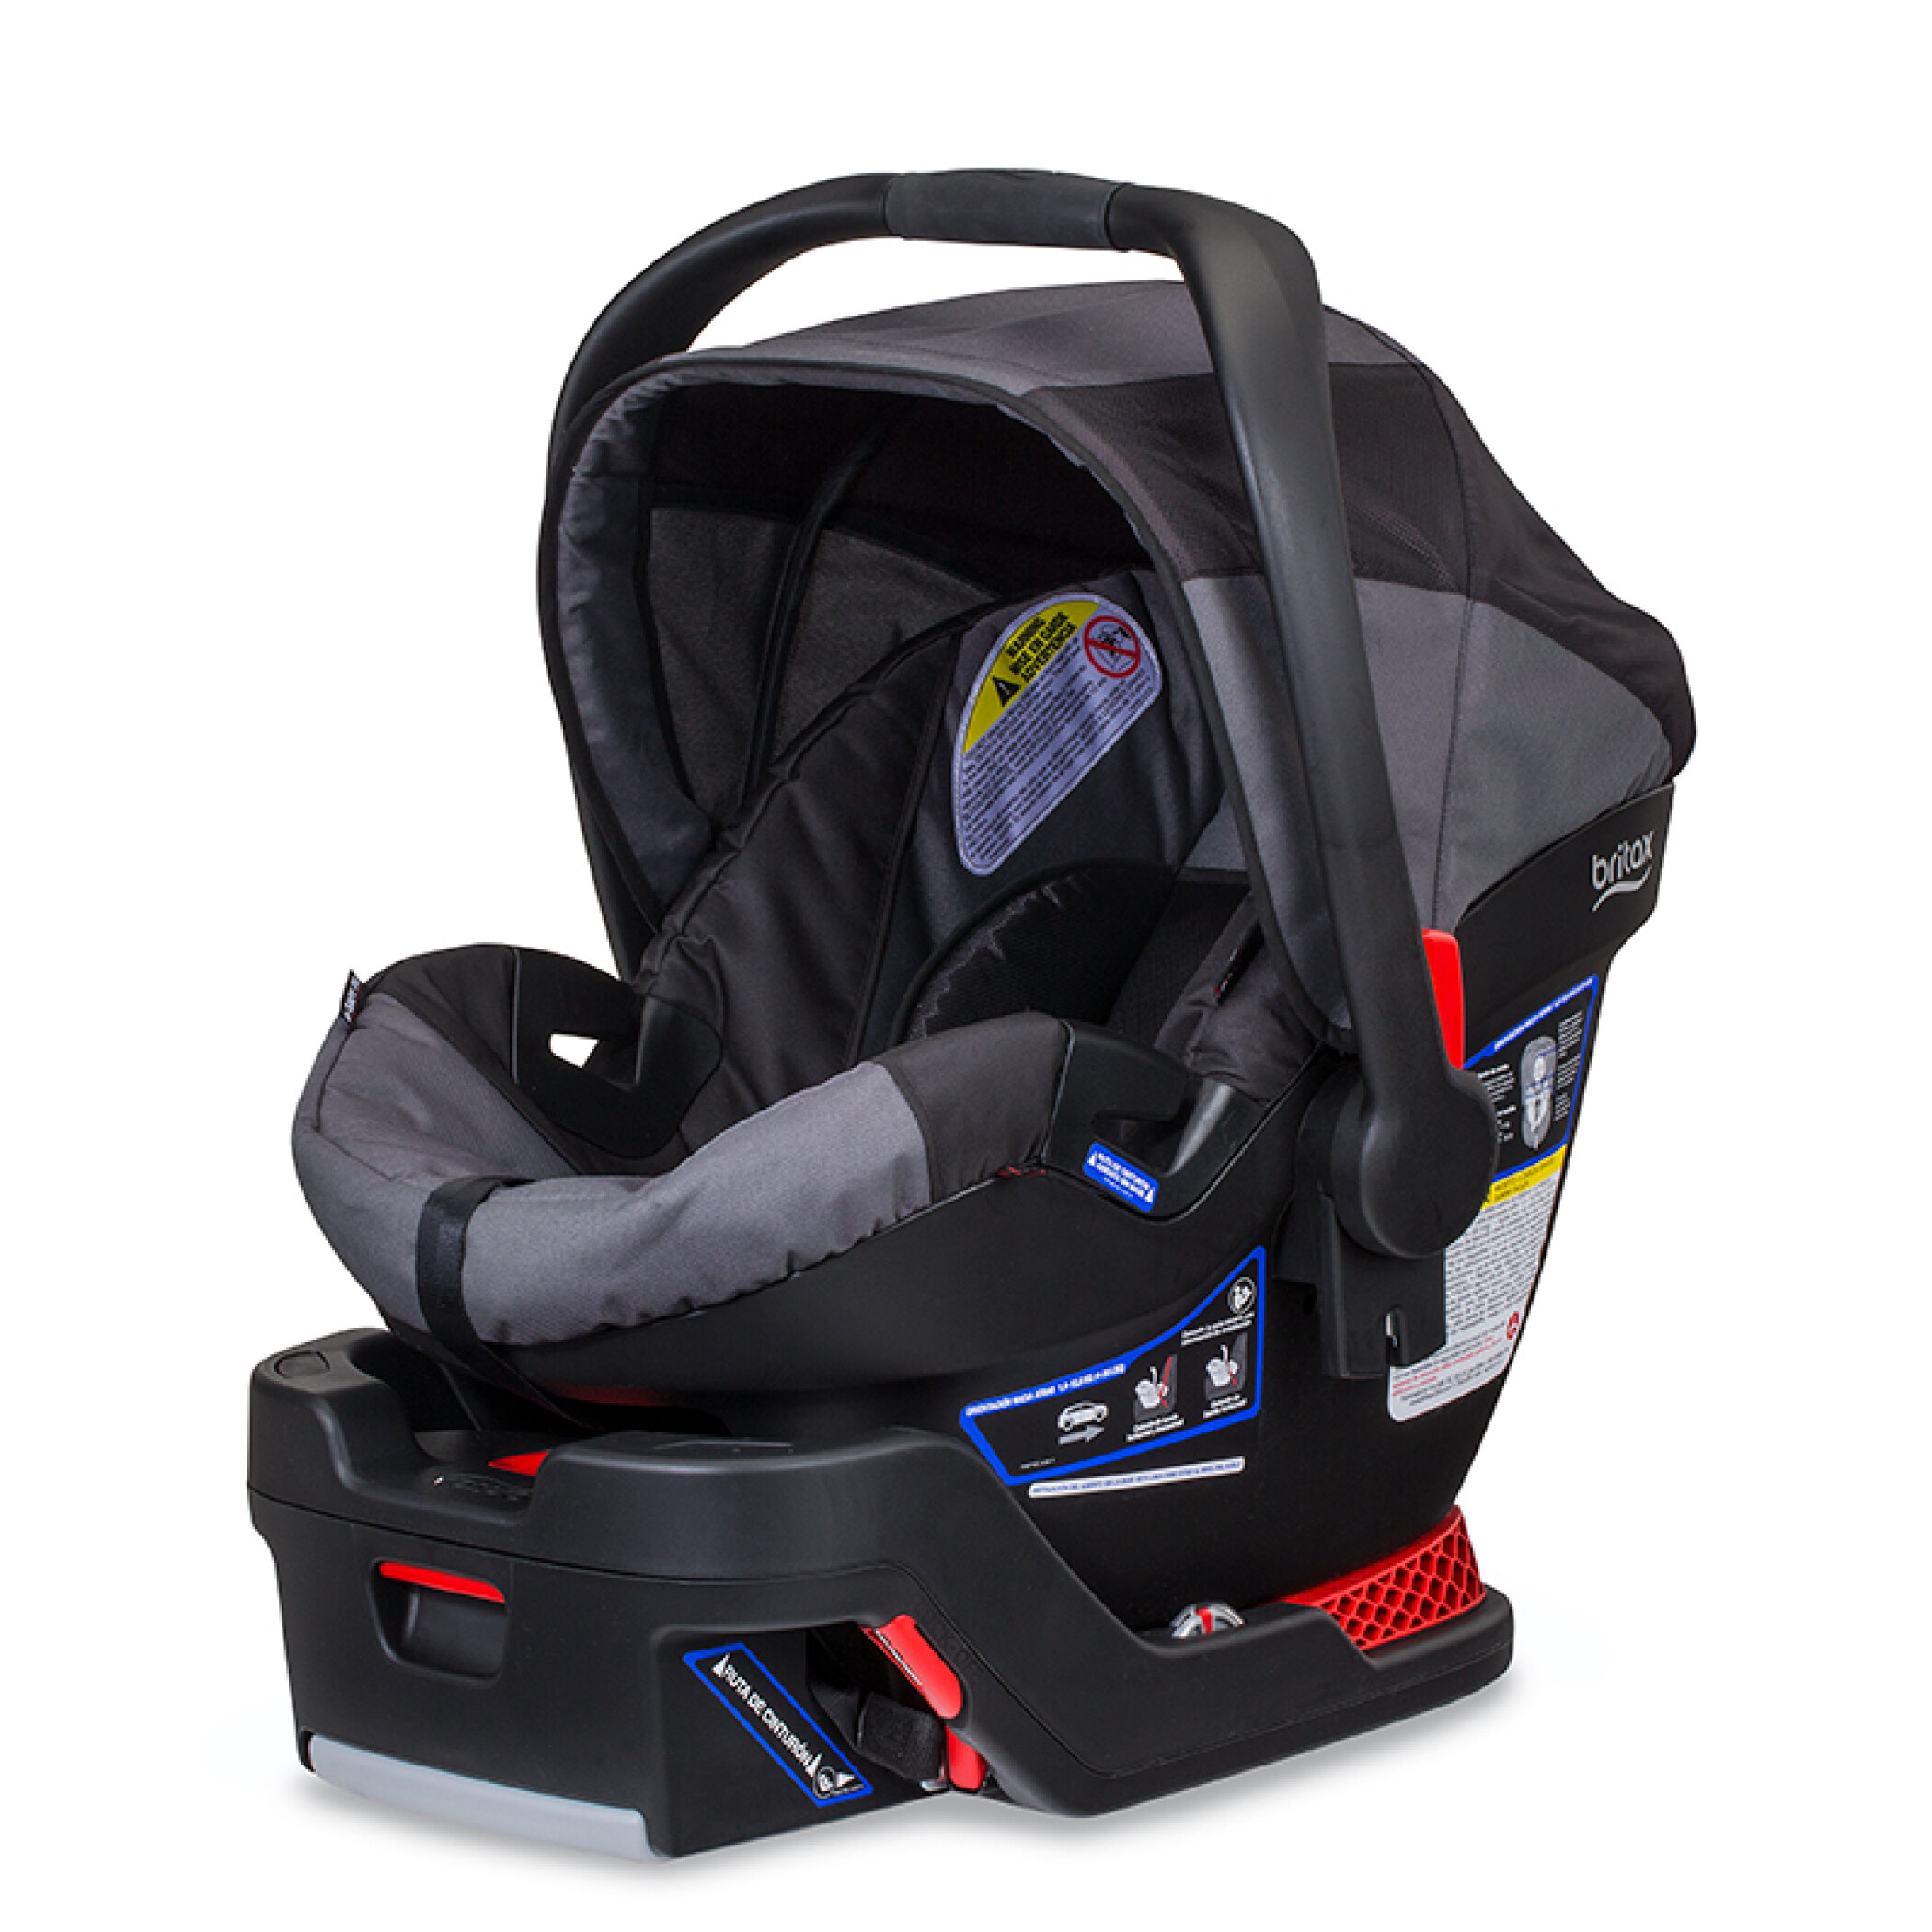 BOB Gear B-Safe 35 by Britax Infant Car Seat, Black